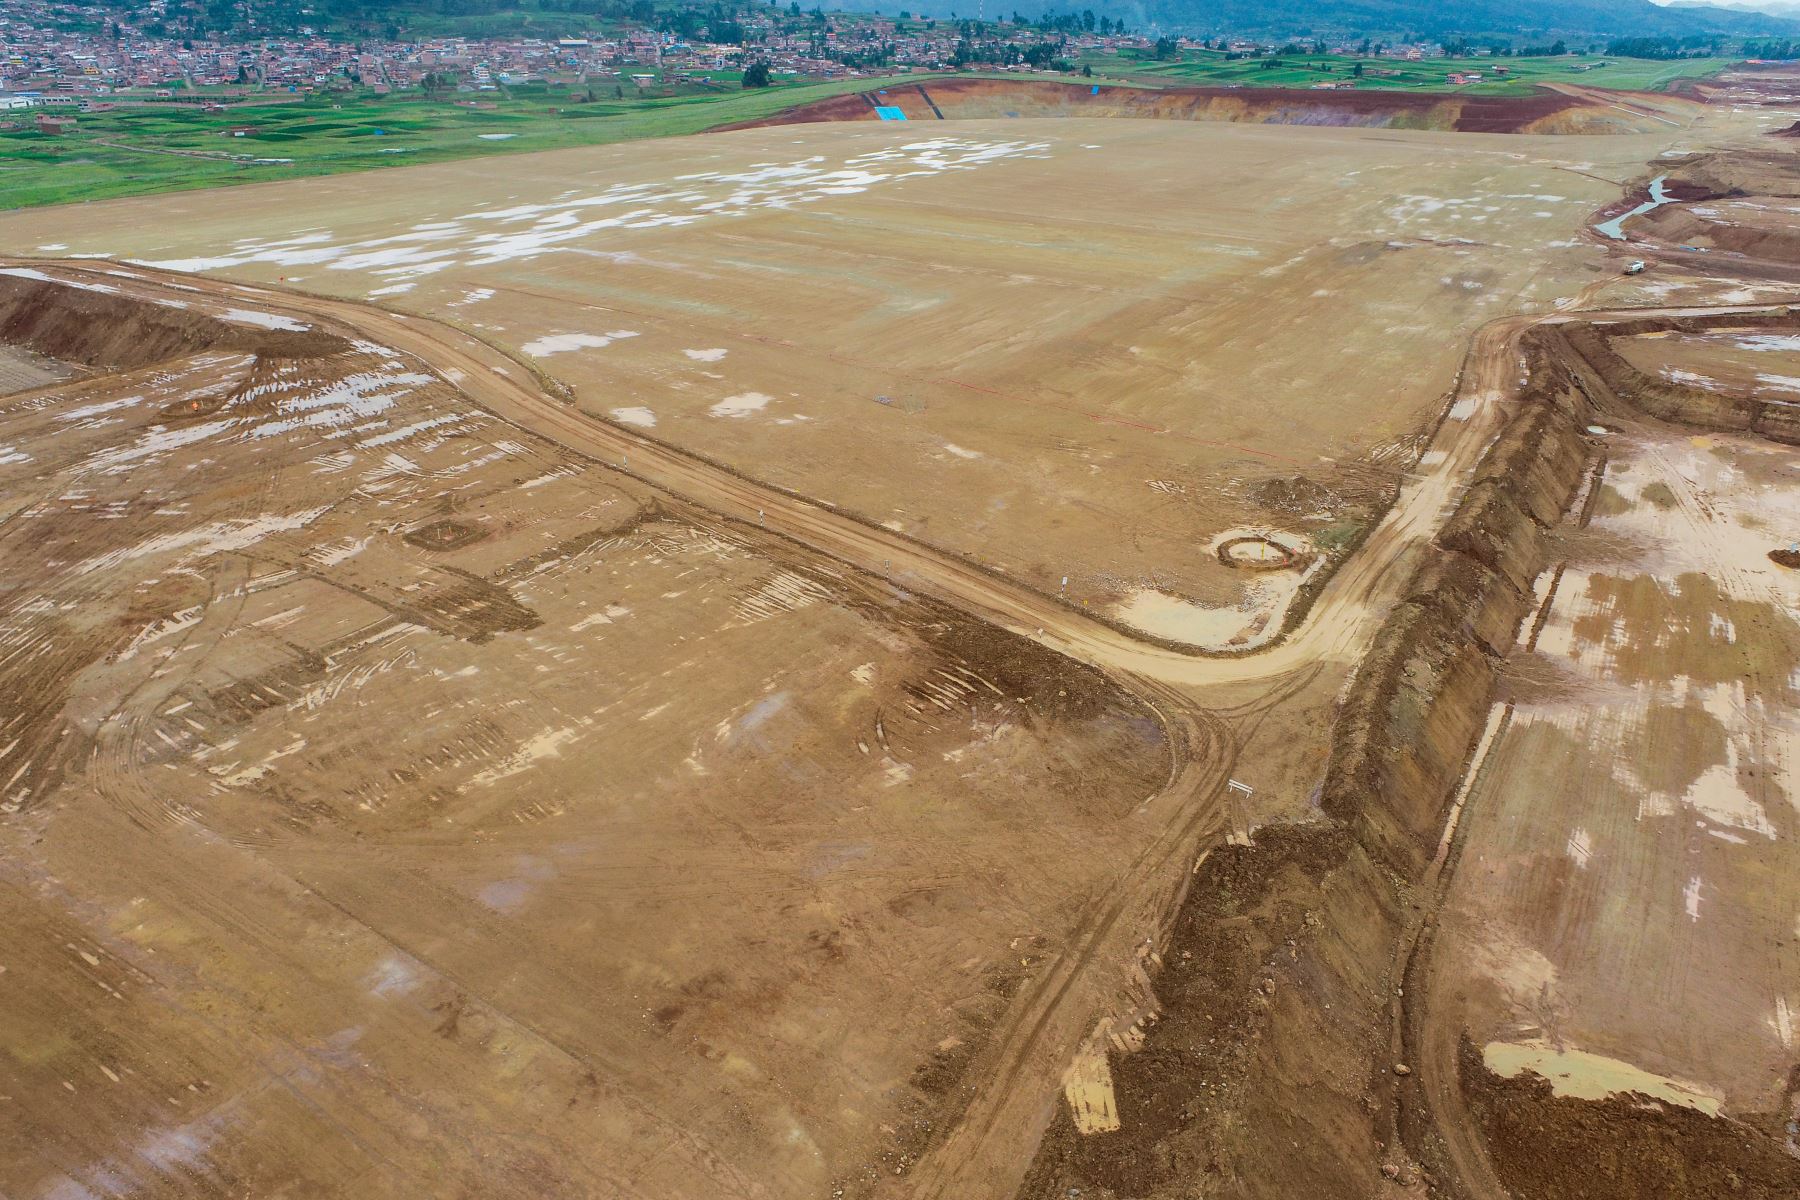 Los trabajos de movimiento de tierras para la construcción del Aeropuerto Internacional de Chinchero, ubicado en la provincia de Urubamba, en Cusco, tienen un avance de 52%. Así lo verificó la viceministra de Transportes, Fabiola Caballero, quien supervisó hoy las labores que se realizan en la zona. Foto: MTC